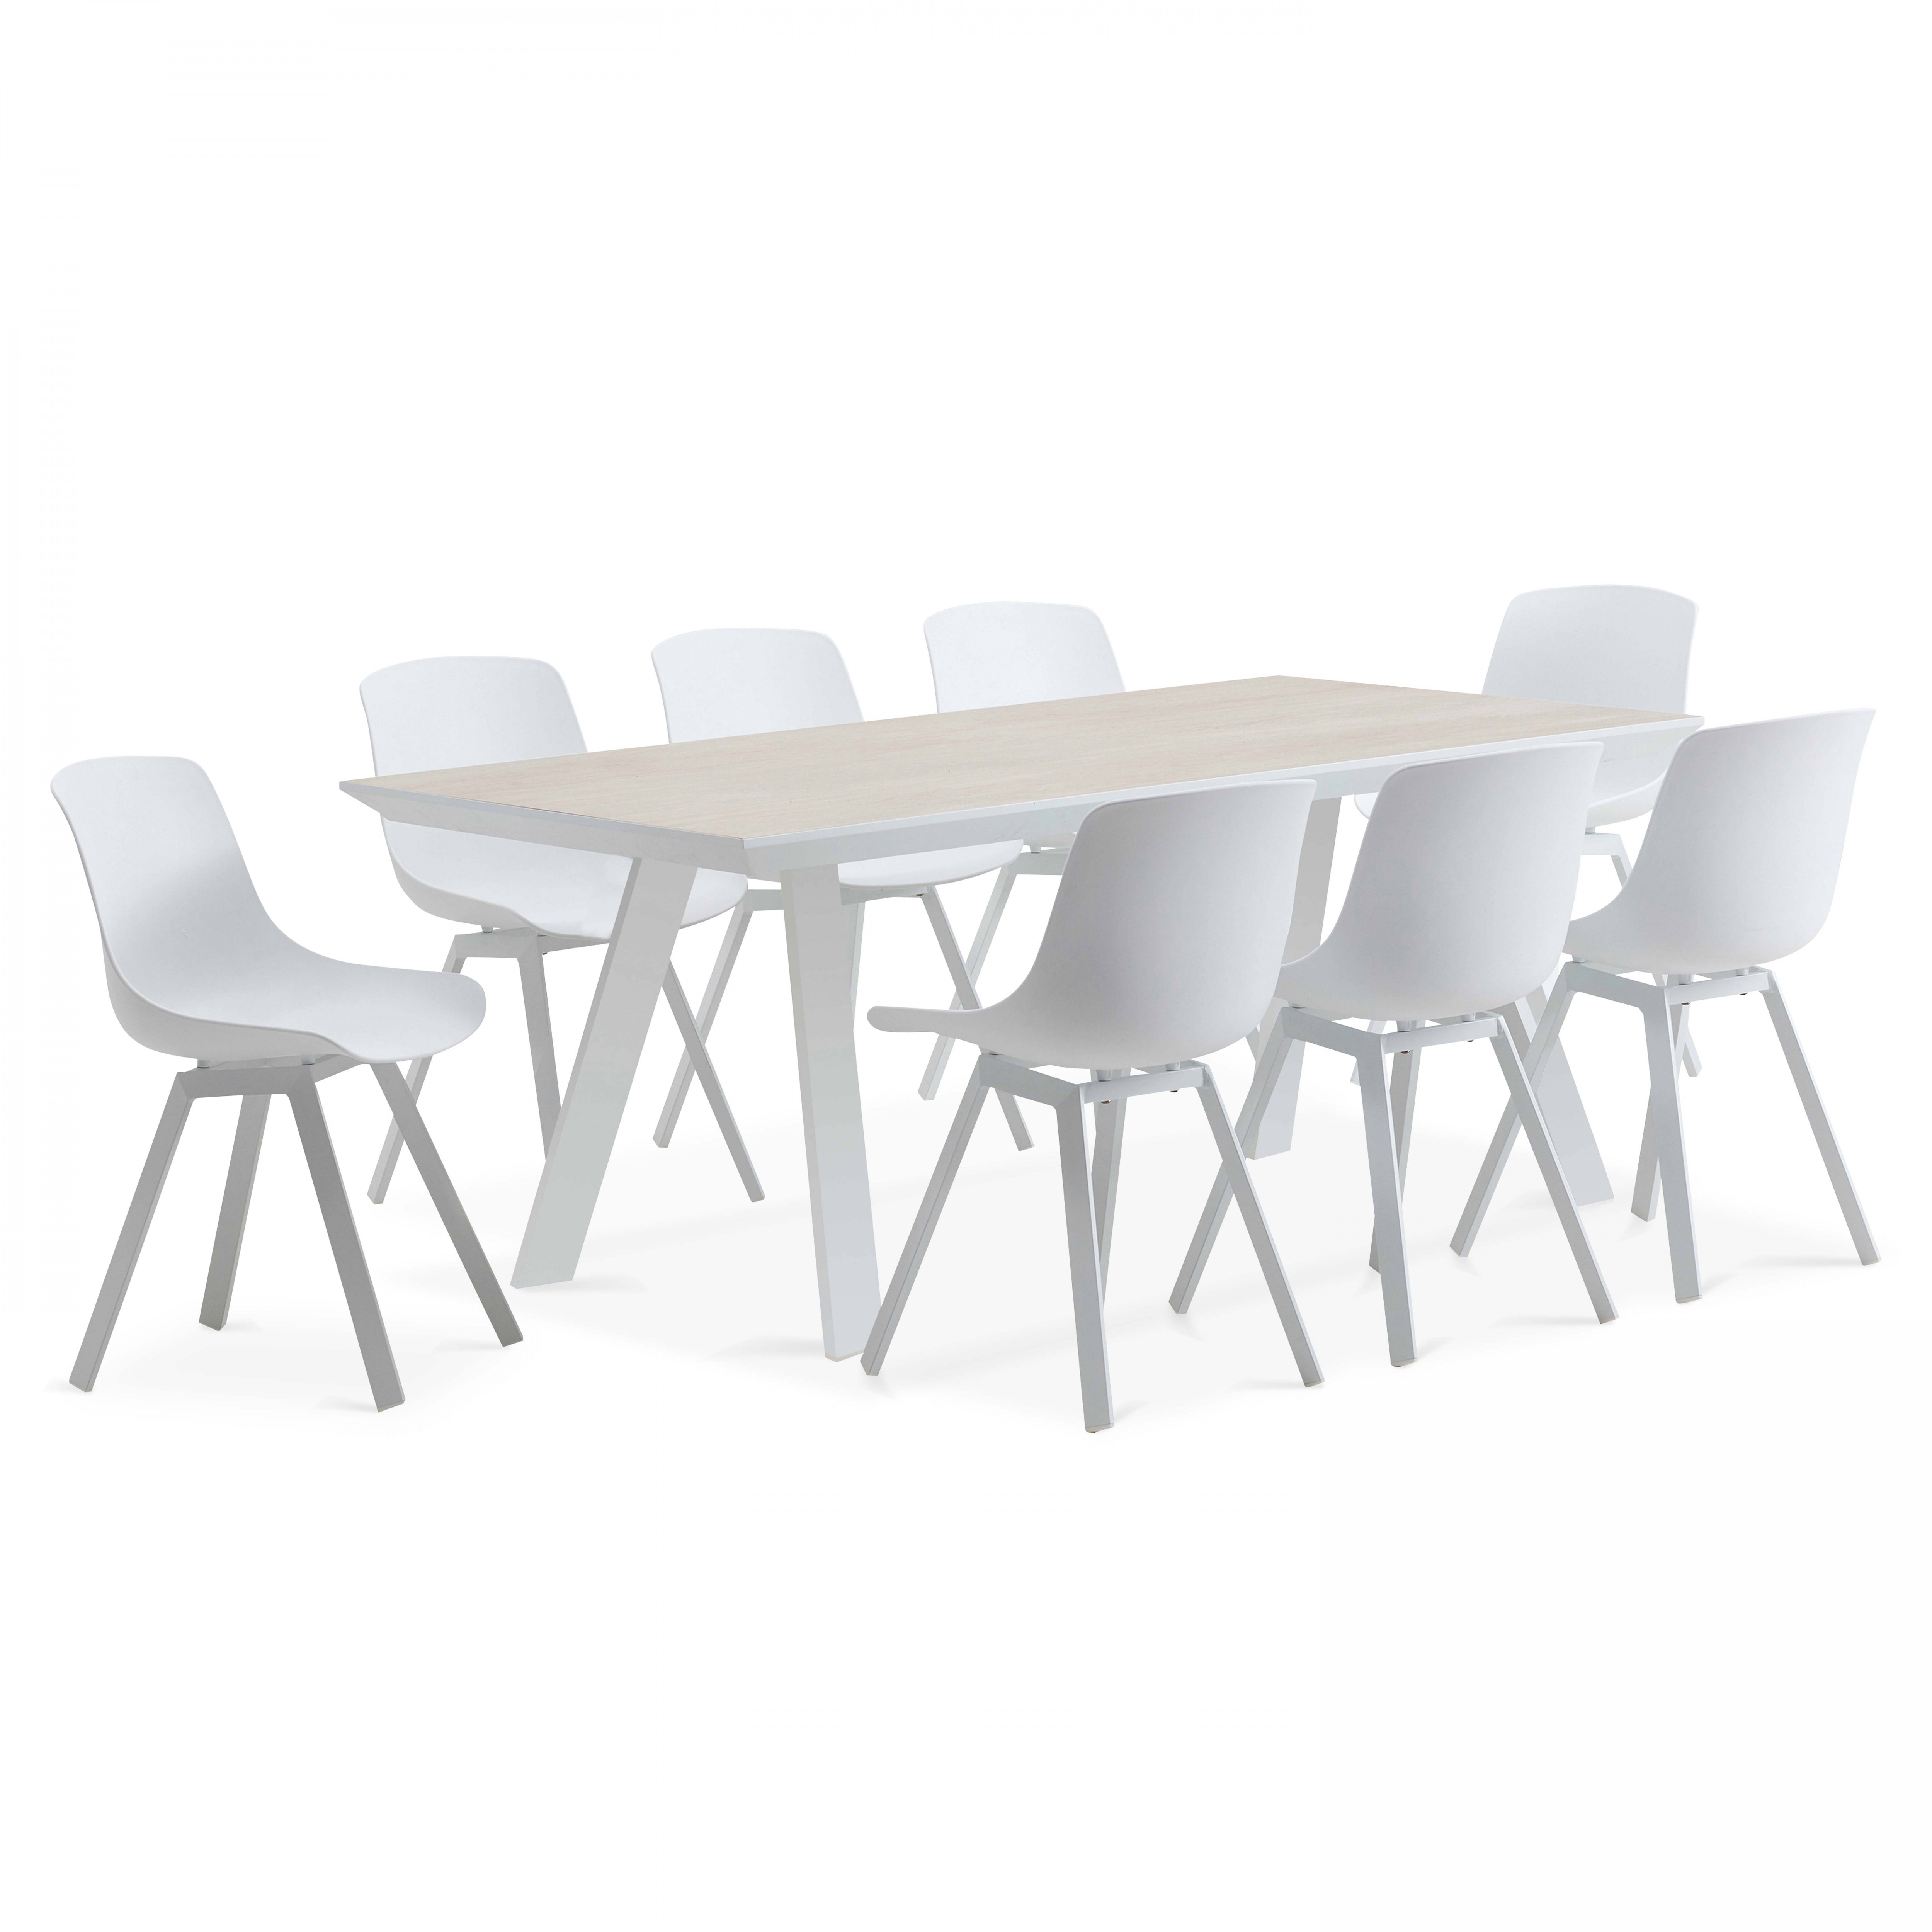 Table avec plateau en céramique esprit scandinave 8 personnes